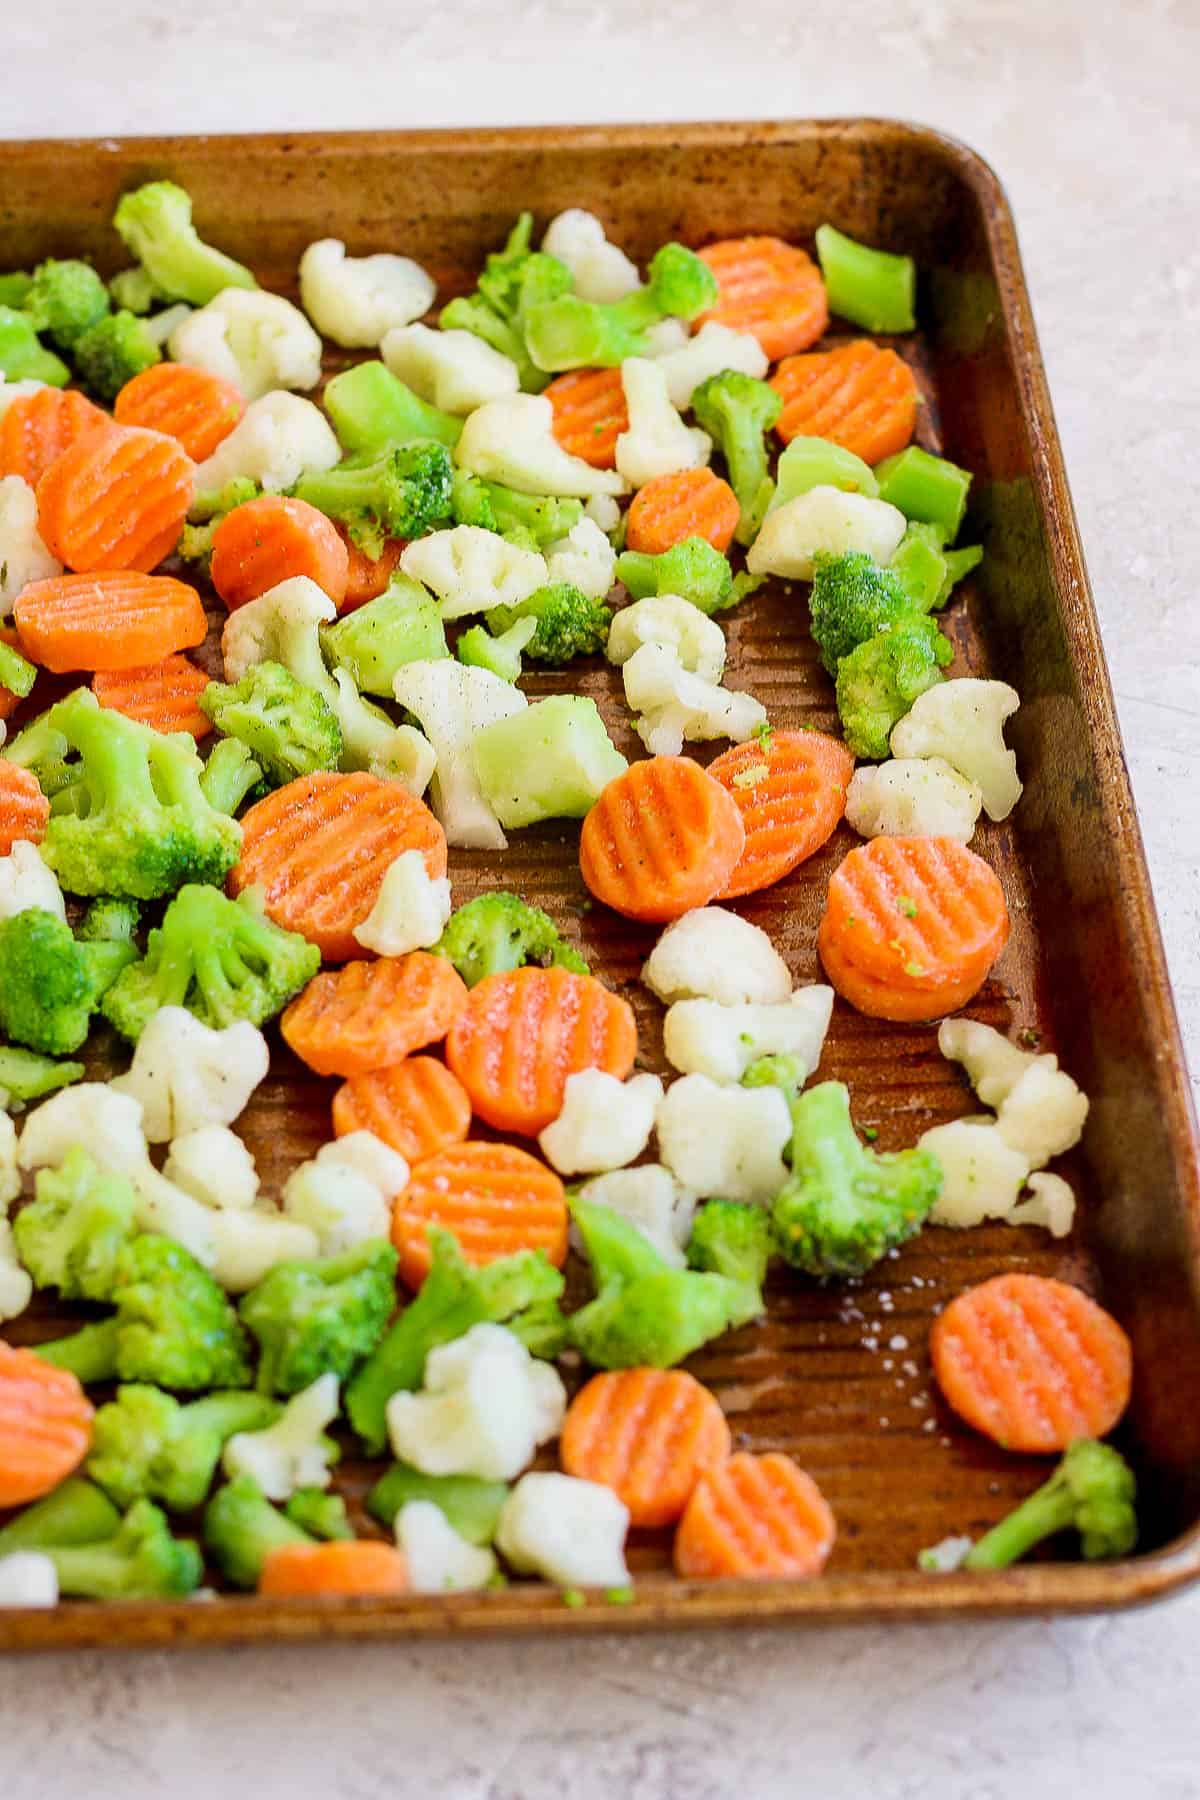 Salt and pepper on frozen veggies on a baking sheet.